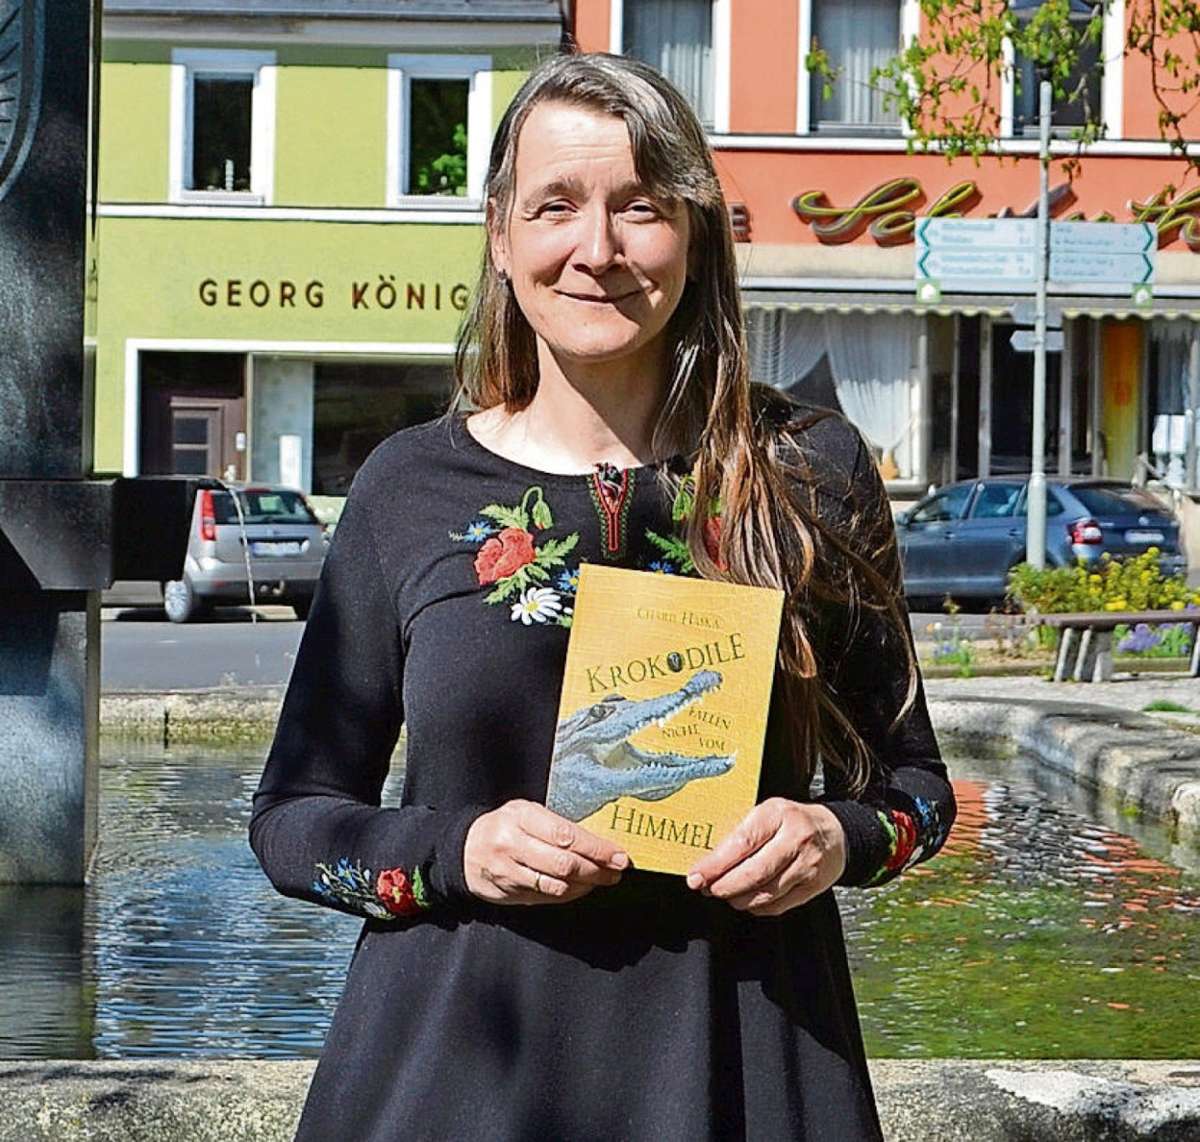 Charis Haska präsentiert ihr Buch vor der Kirche in Marktleuthen. Foto: sim